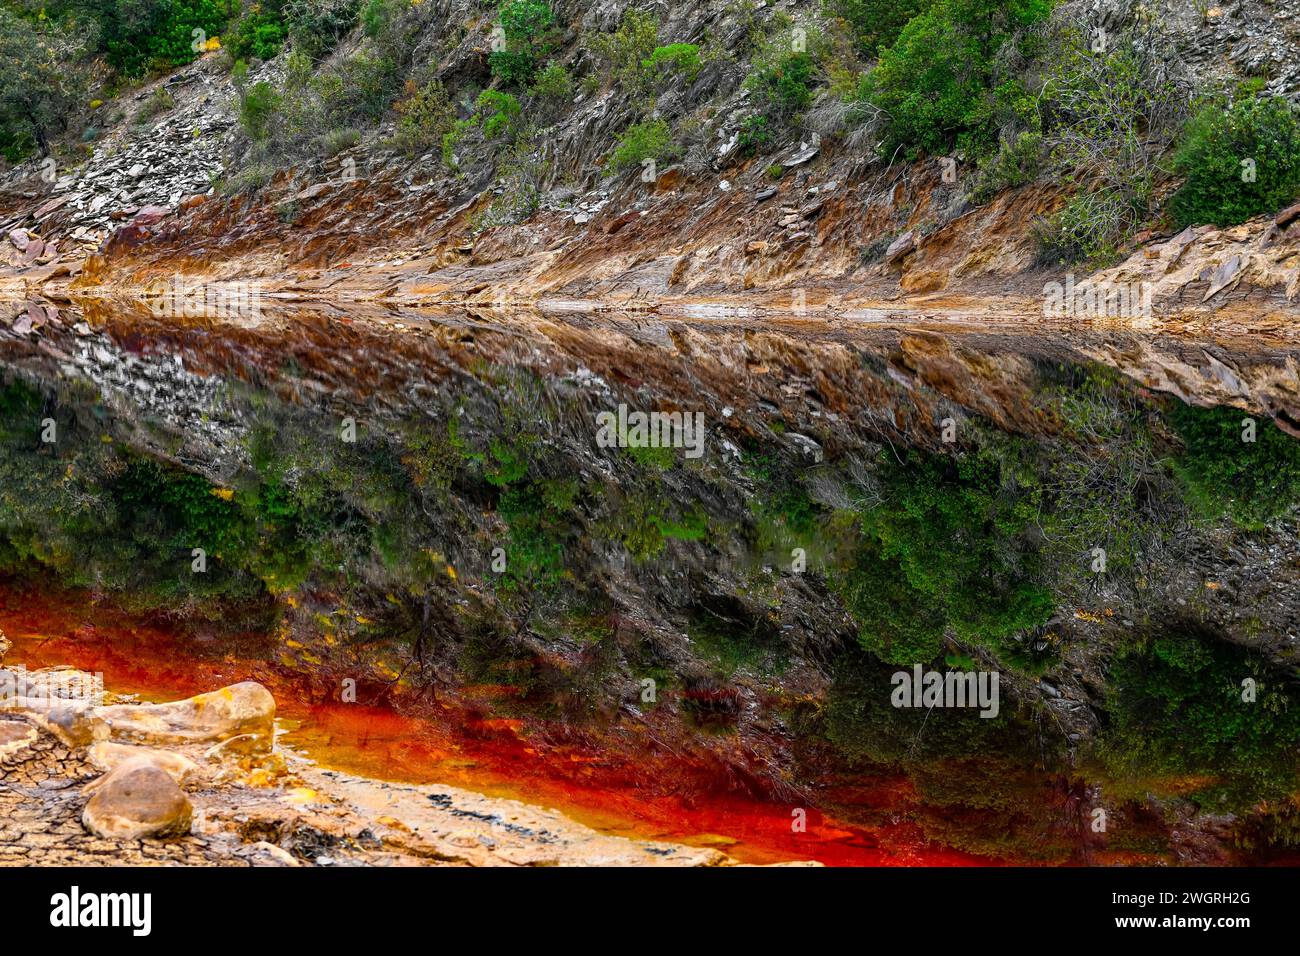 Les sédiments rouges spectaculaires du Rio Tinto contrastent fortement avec les eaux réfléchissantes sombres et la végétation luxuriante au-dessus Banque D'Images